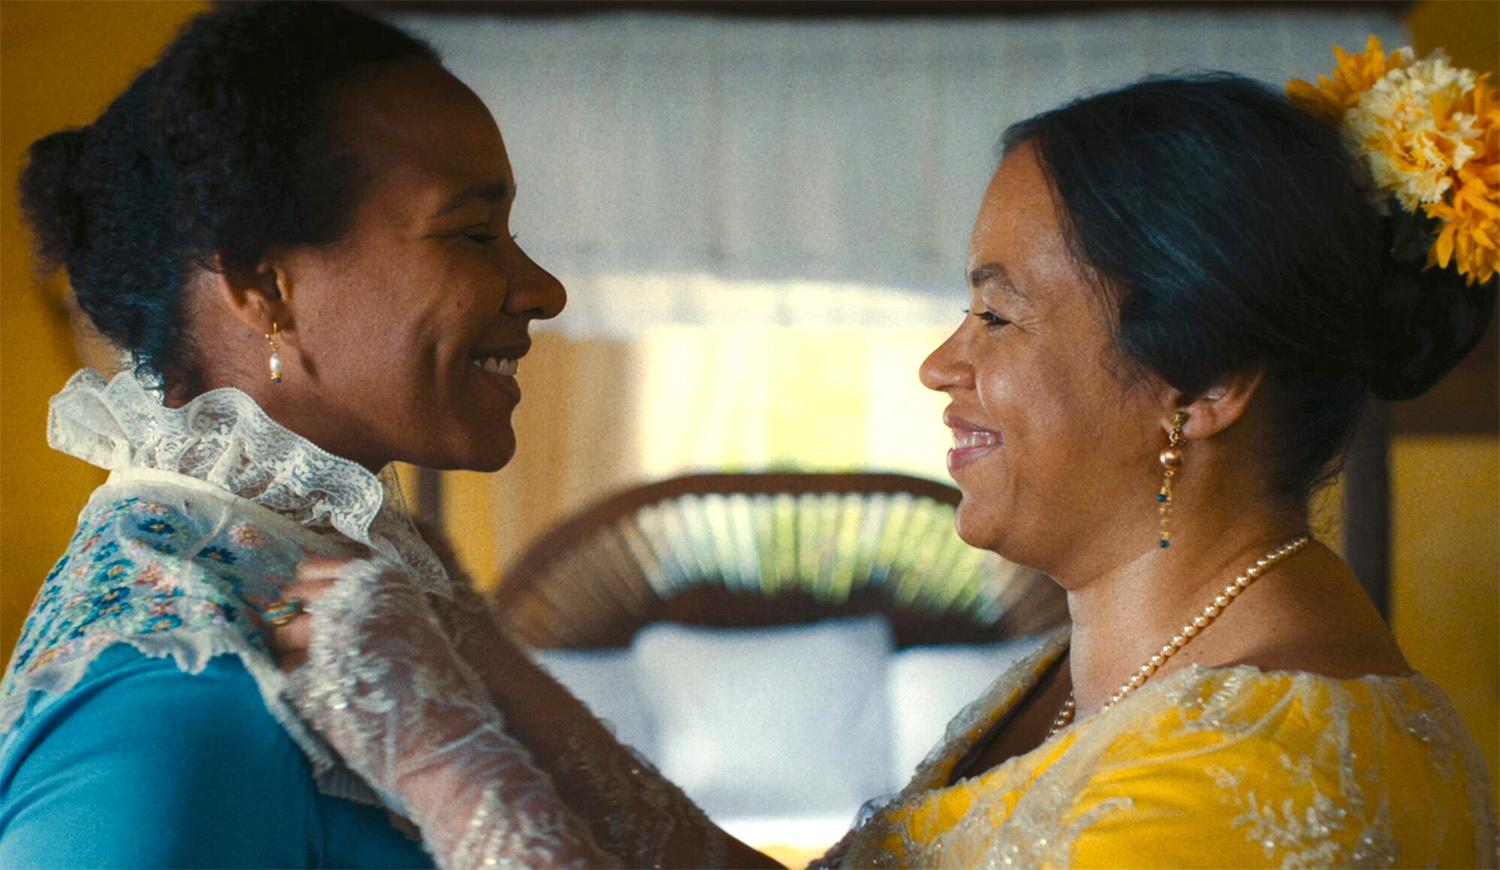 Filmen ”Empire” handlar om Danmarks koloniala förflutna i Karibien. Den har nominerats till Nordiska rådets filmpris.